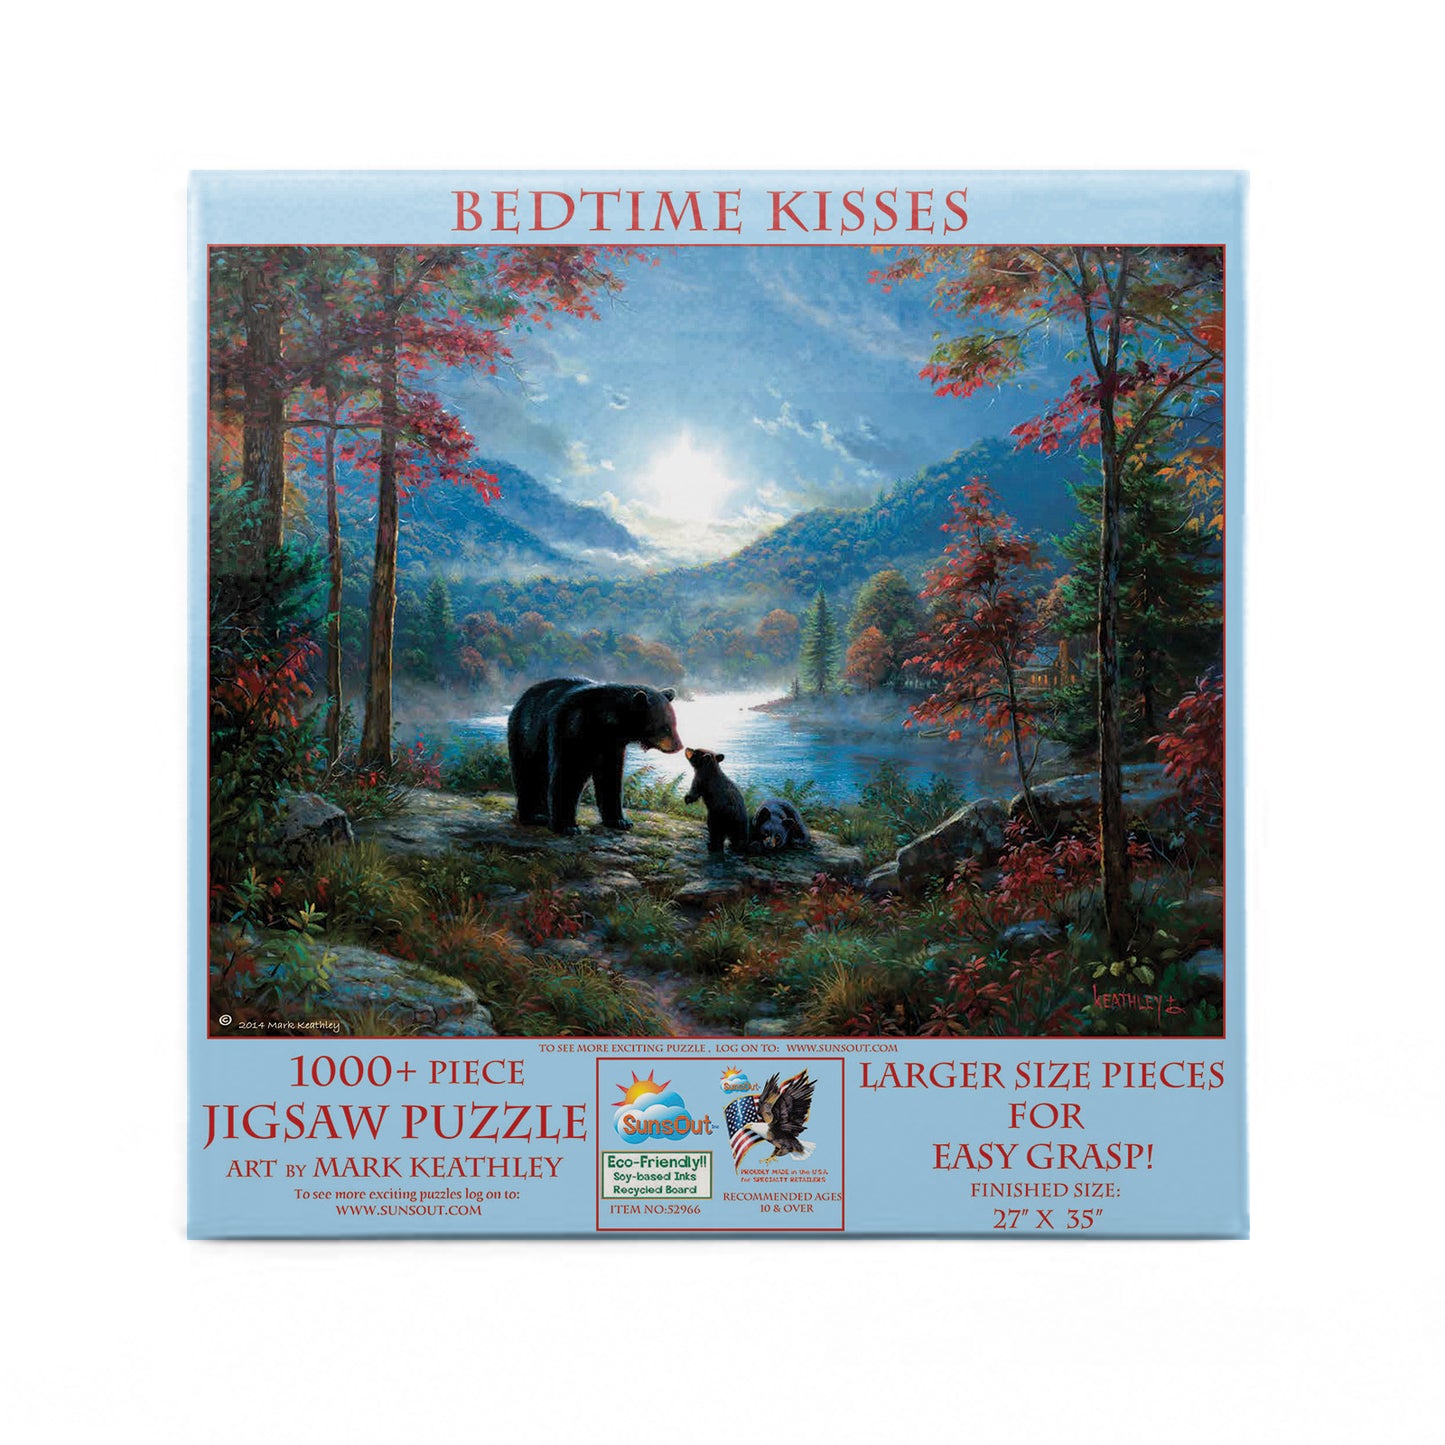 Bedtime Kisses - 1000 Large Piece Jigsaw Puzzle